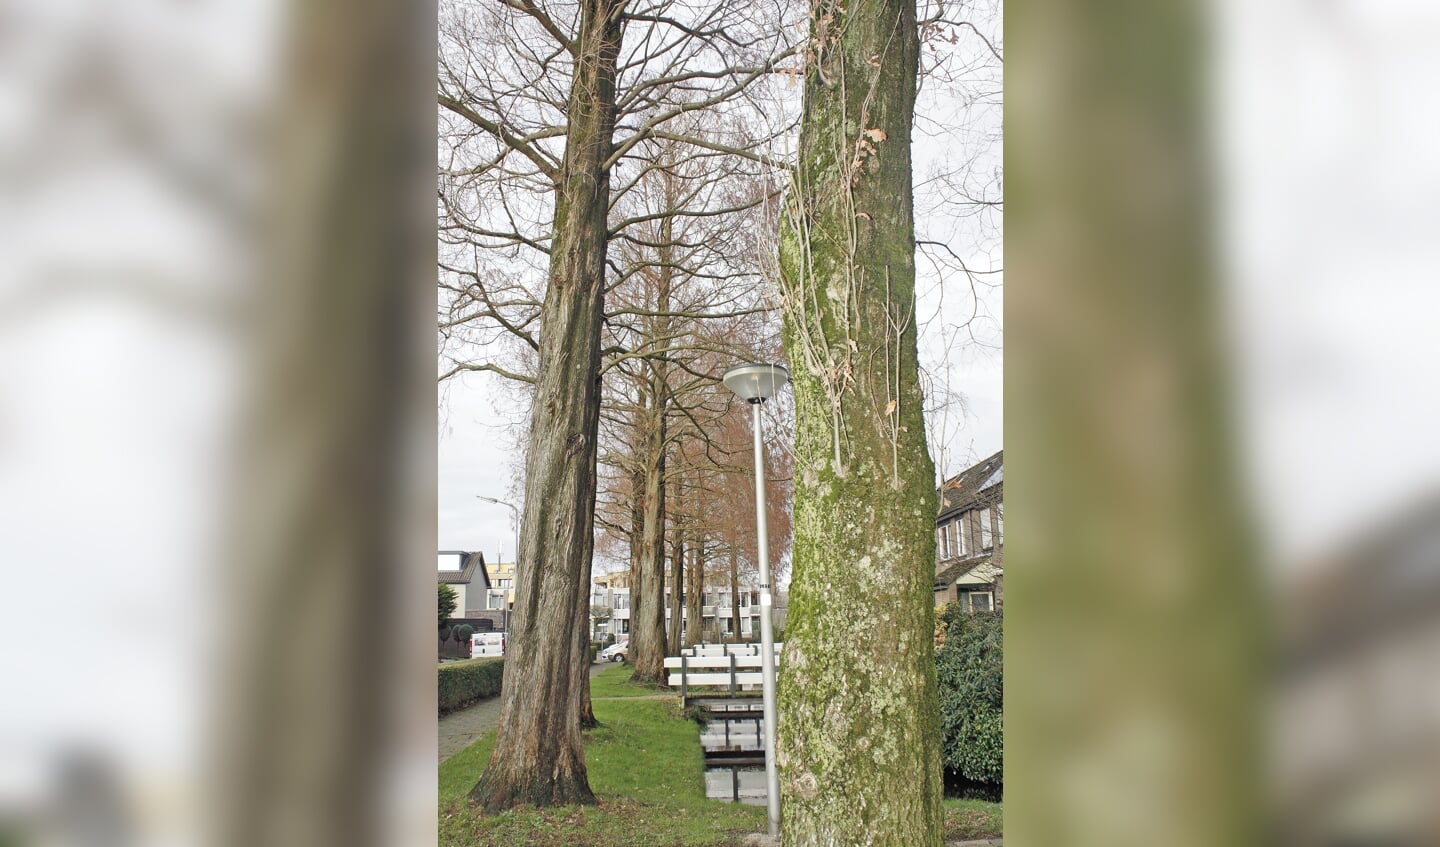 Na ruim 38 jaar, 25 meter groei én het bezit van een beschermde status zal in het voorjaar de spreekwoordelijke bijl aan de wortel van de bomen worden gezet in de Prinses Beatrixstraat.